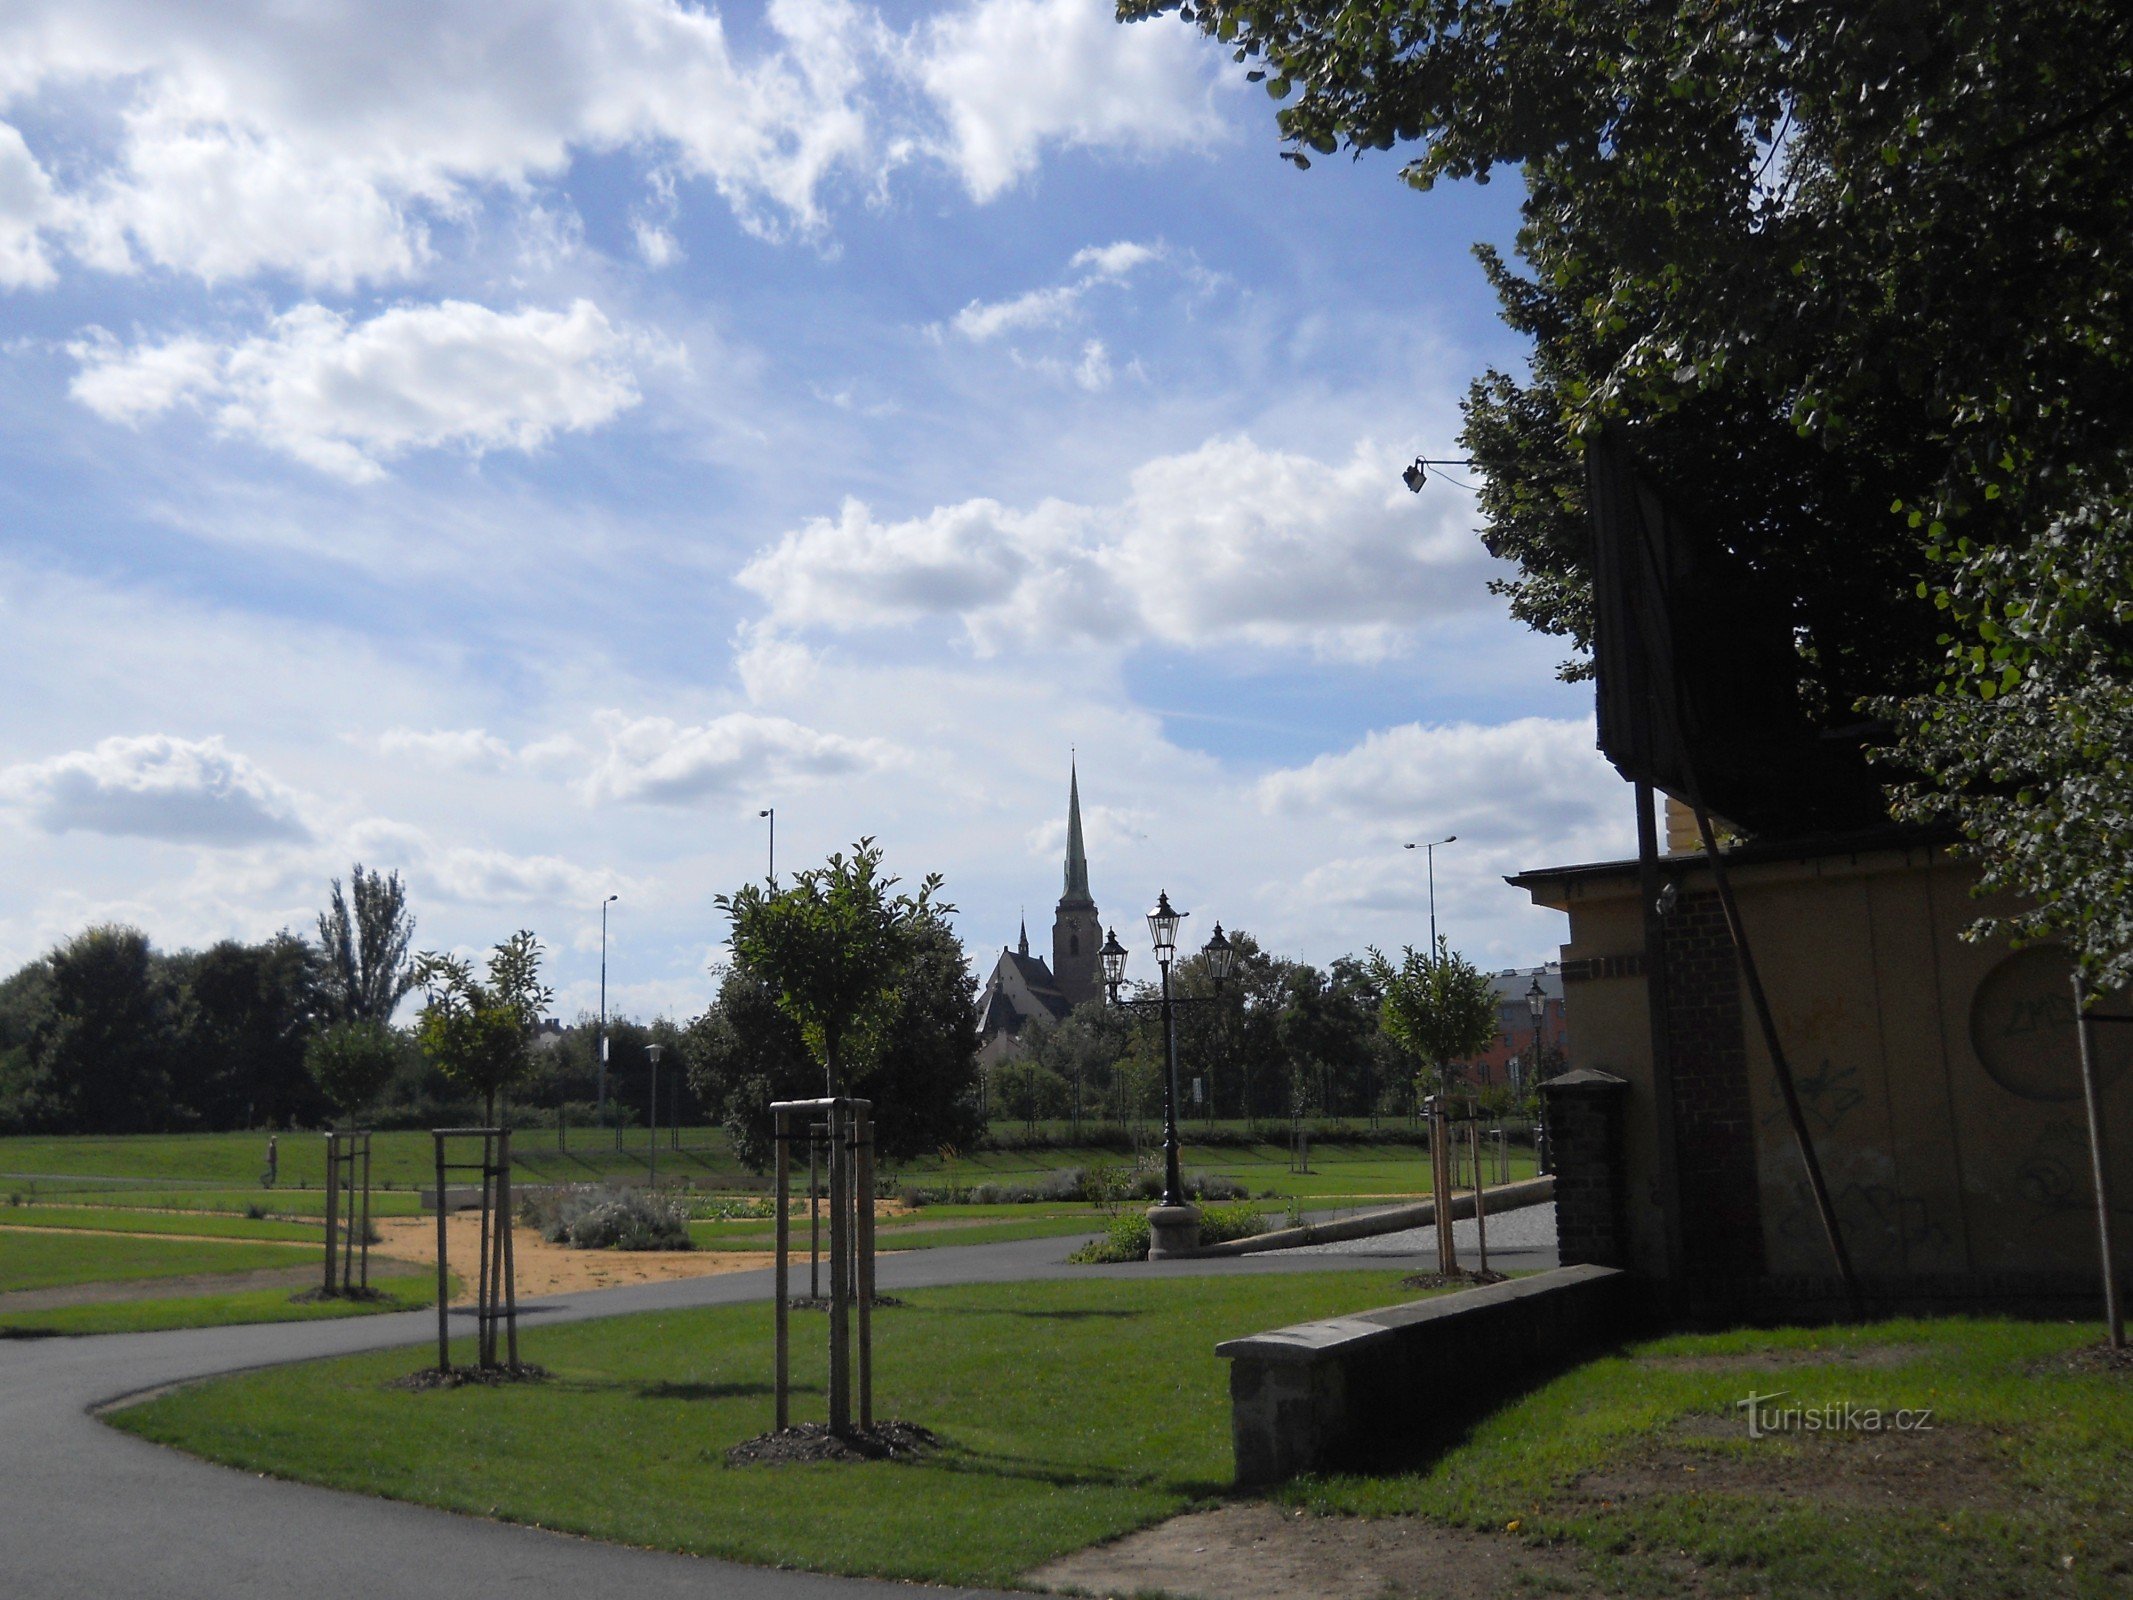 公园入口处可以看到圣彼得大教堂的比尔森大教堂。 巴塞洛缪